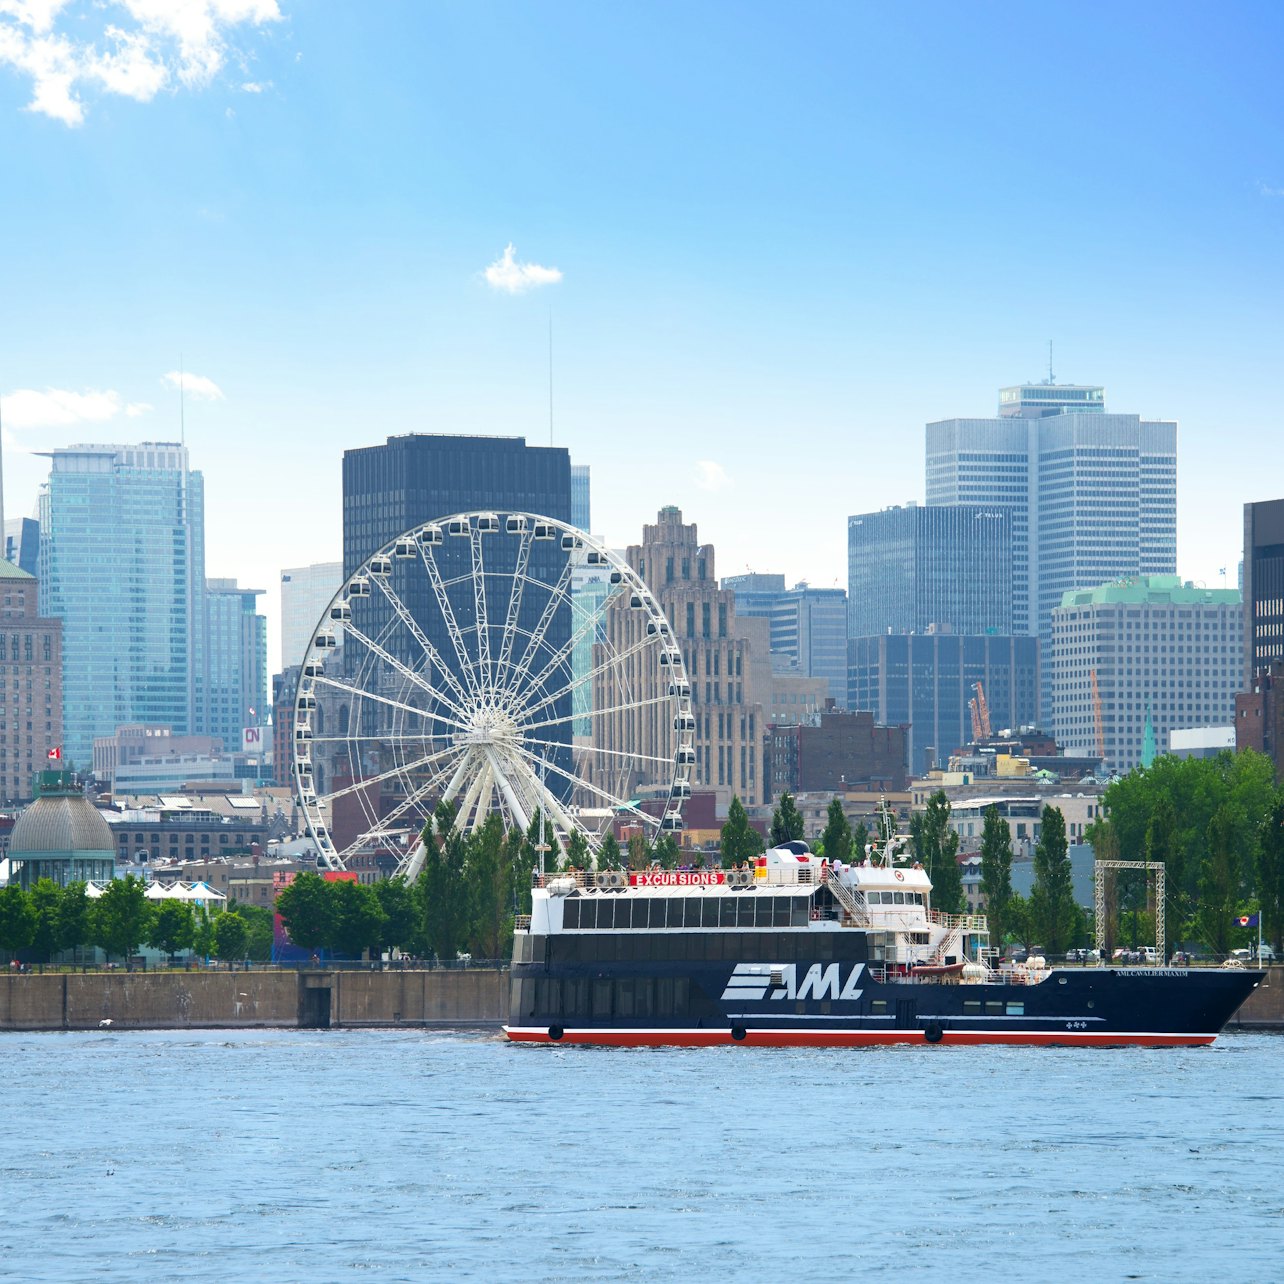 Cruzeiro turístico guiado pelo rio em Montreal - Acomodações em Montreal